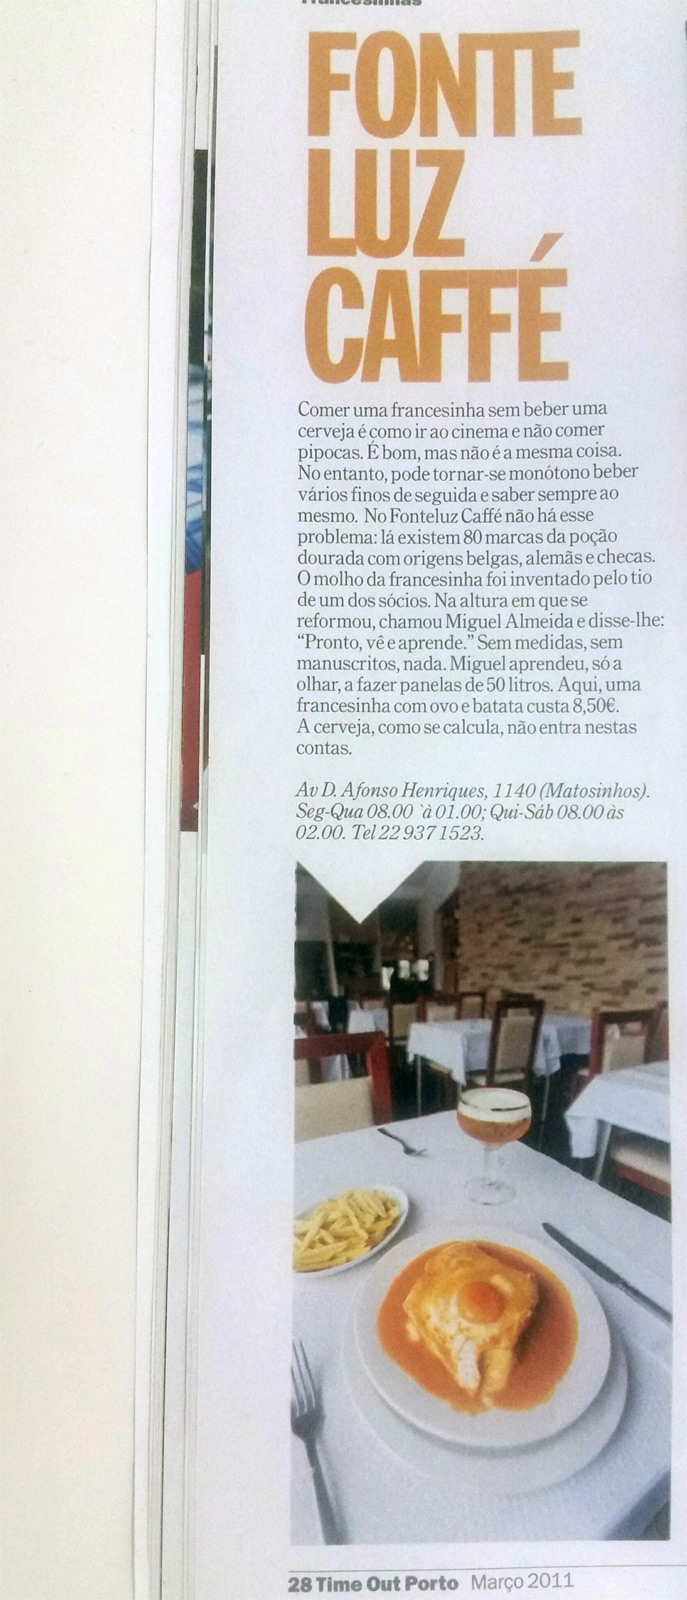 Artigo da revista Time Out sobre as melhores restaurantes de francesinhas na região portuense